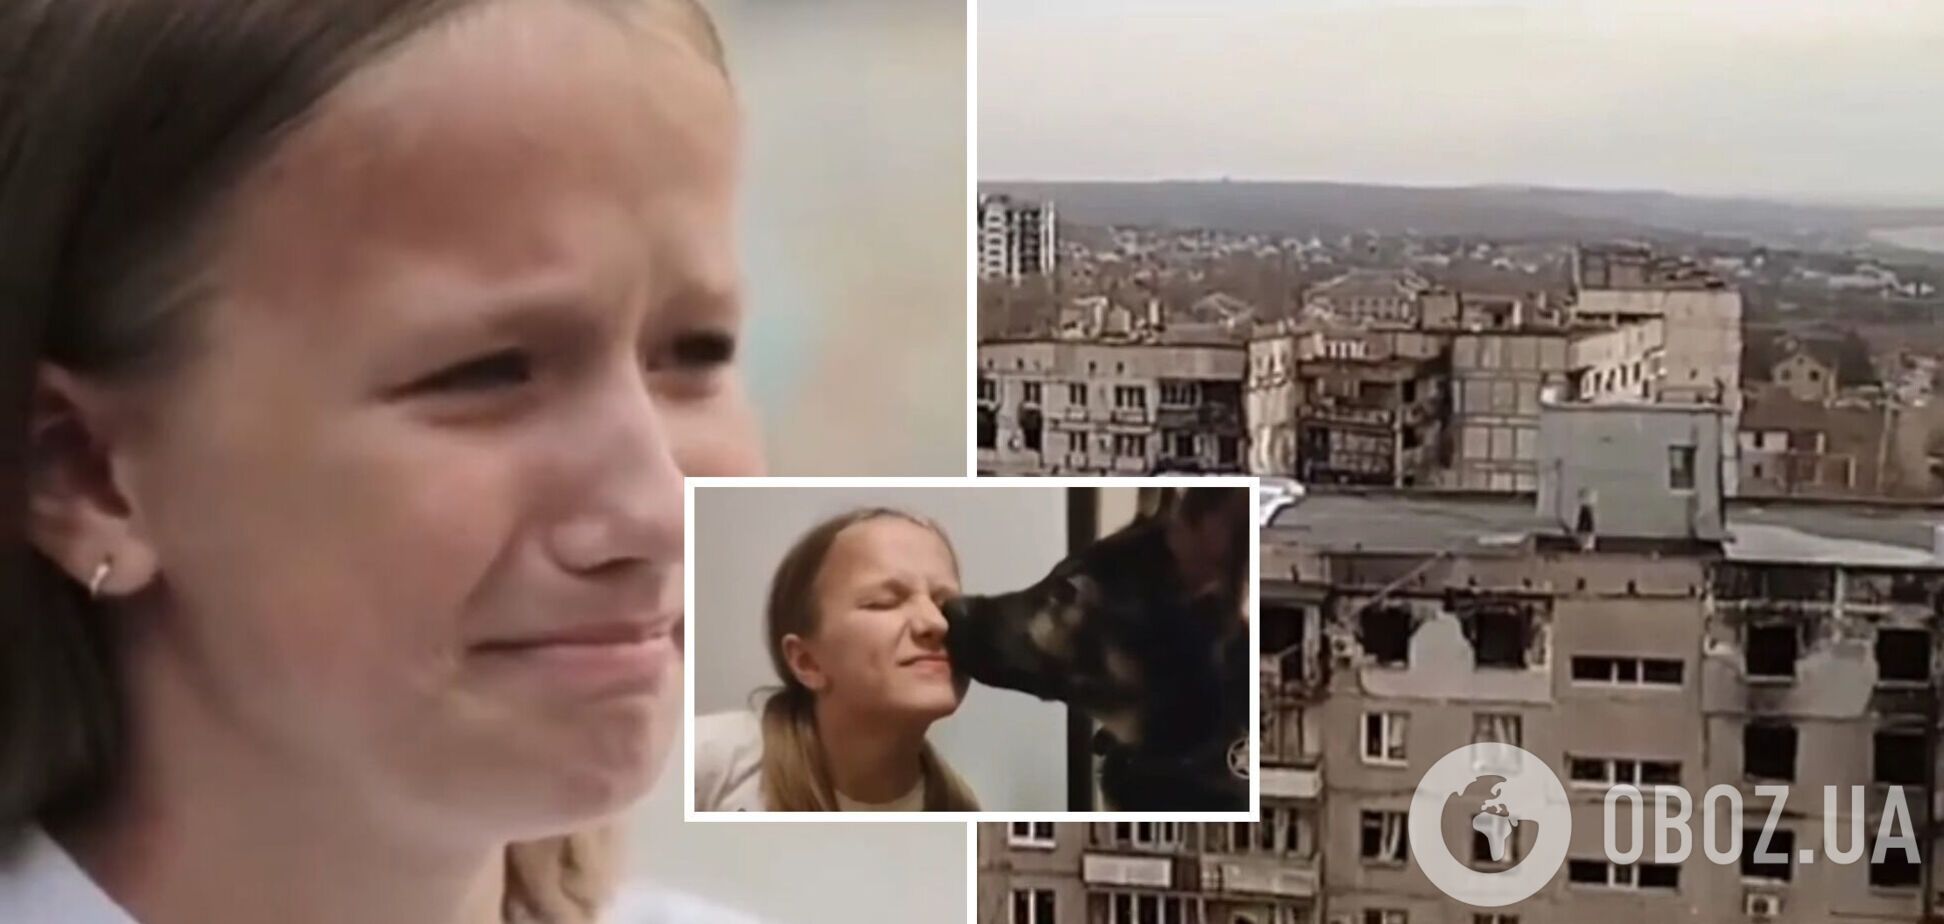 'Ця країна розбомбила моє місто': дівчинка з Маріуполя розповіла, як РФ зруйнувала її життя. Відео